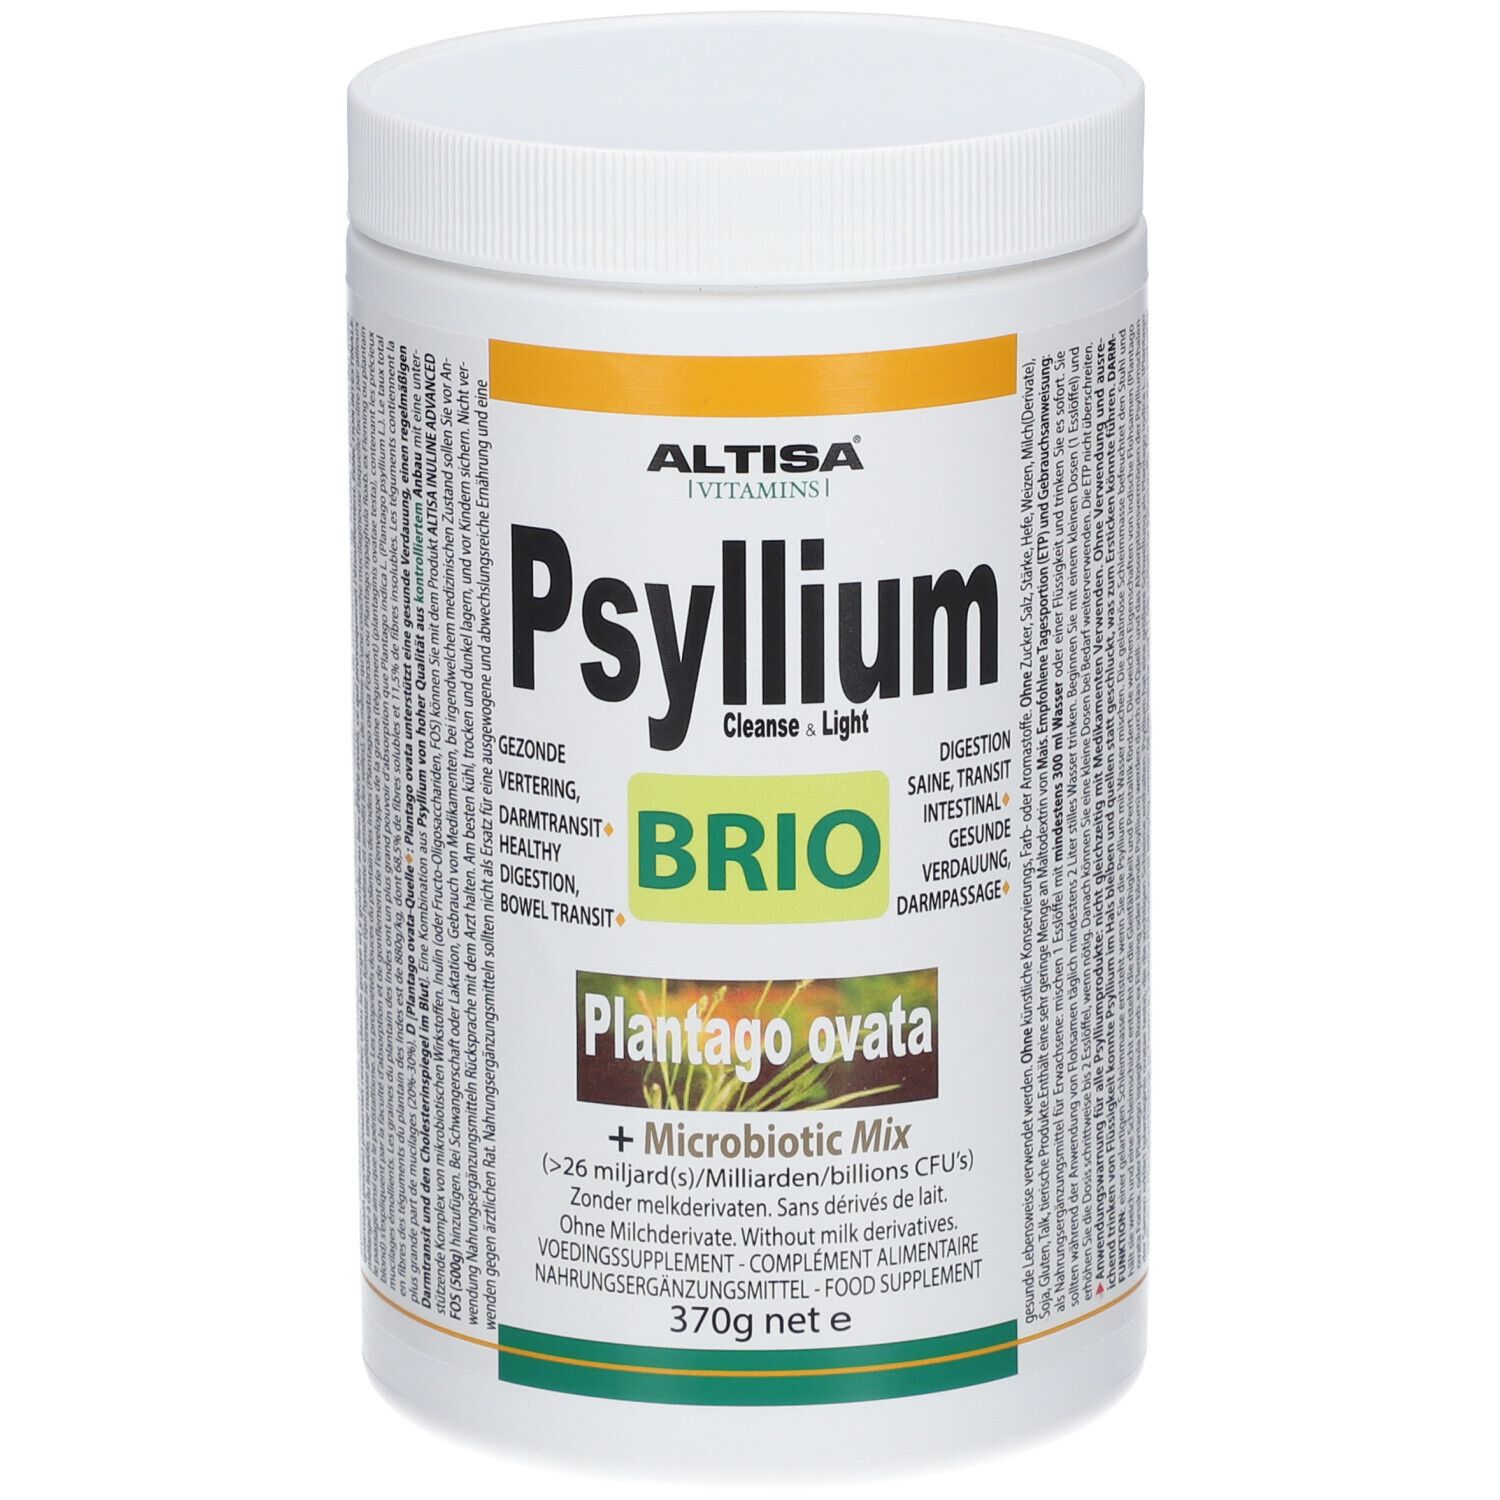 Altisa Psyllium Brio + Microbiotica